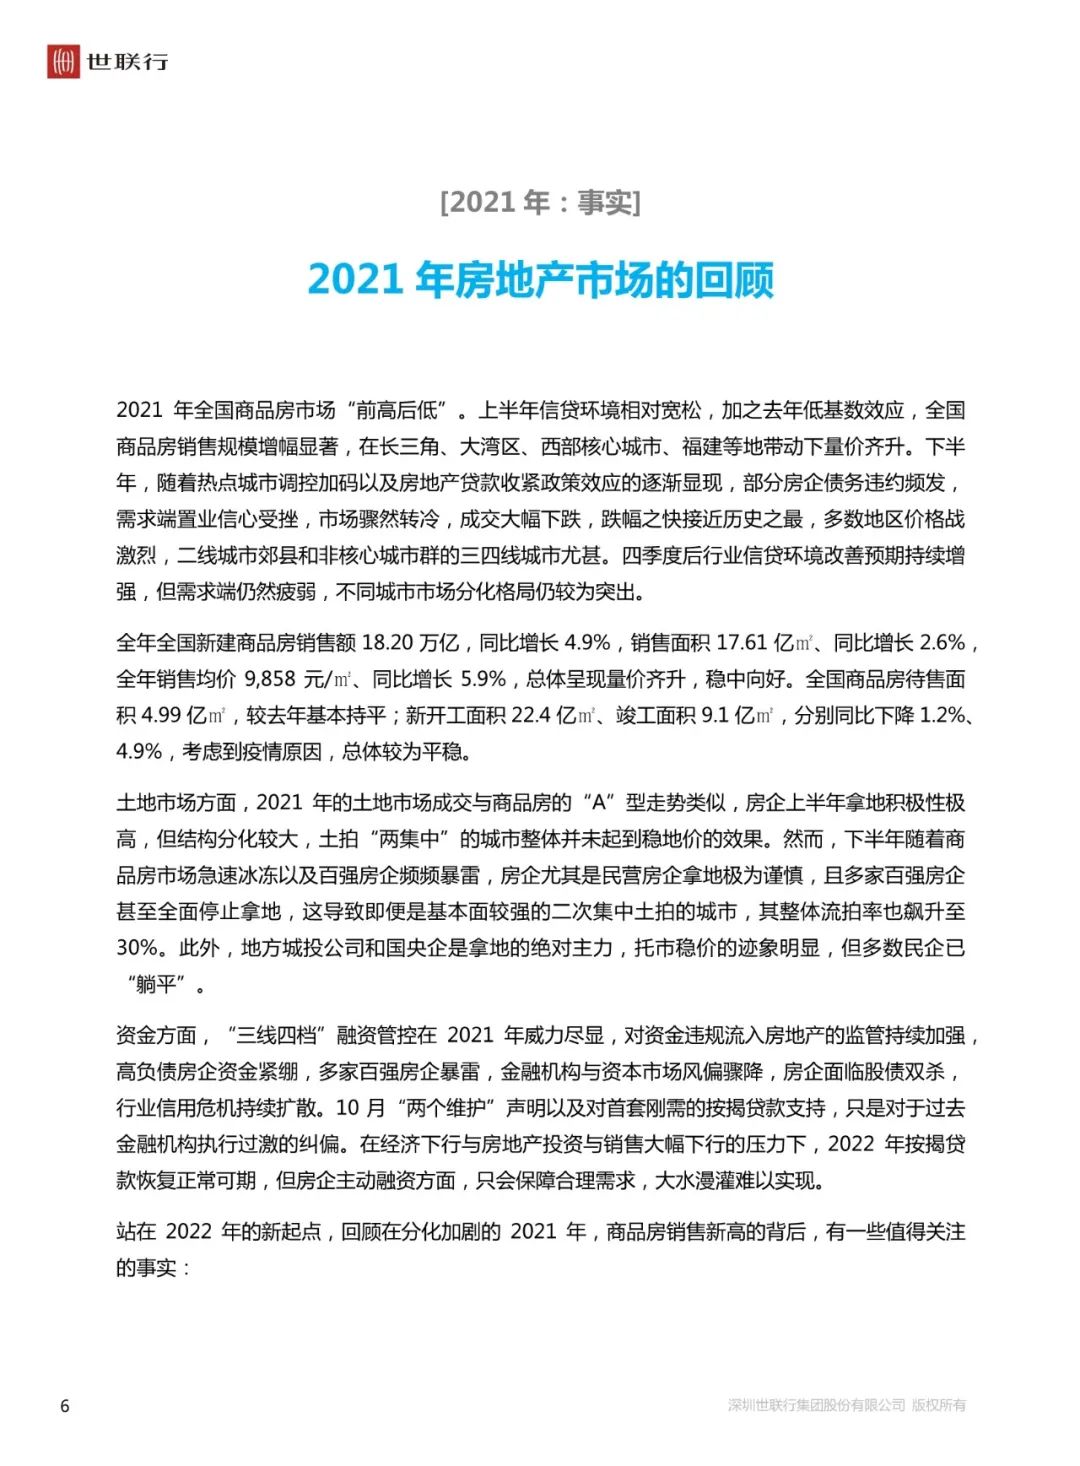 世联行中国房地产市场2021年回顾与2022年展望